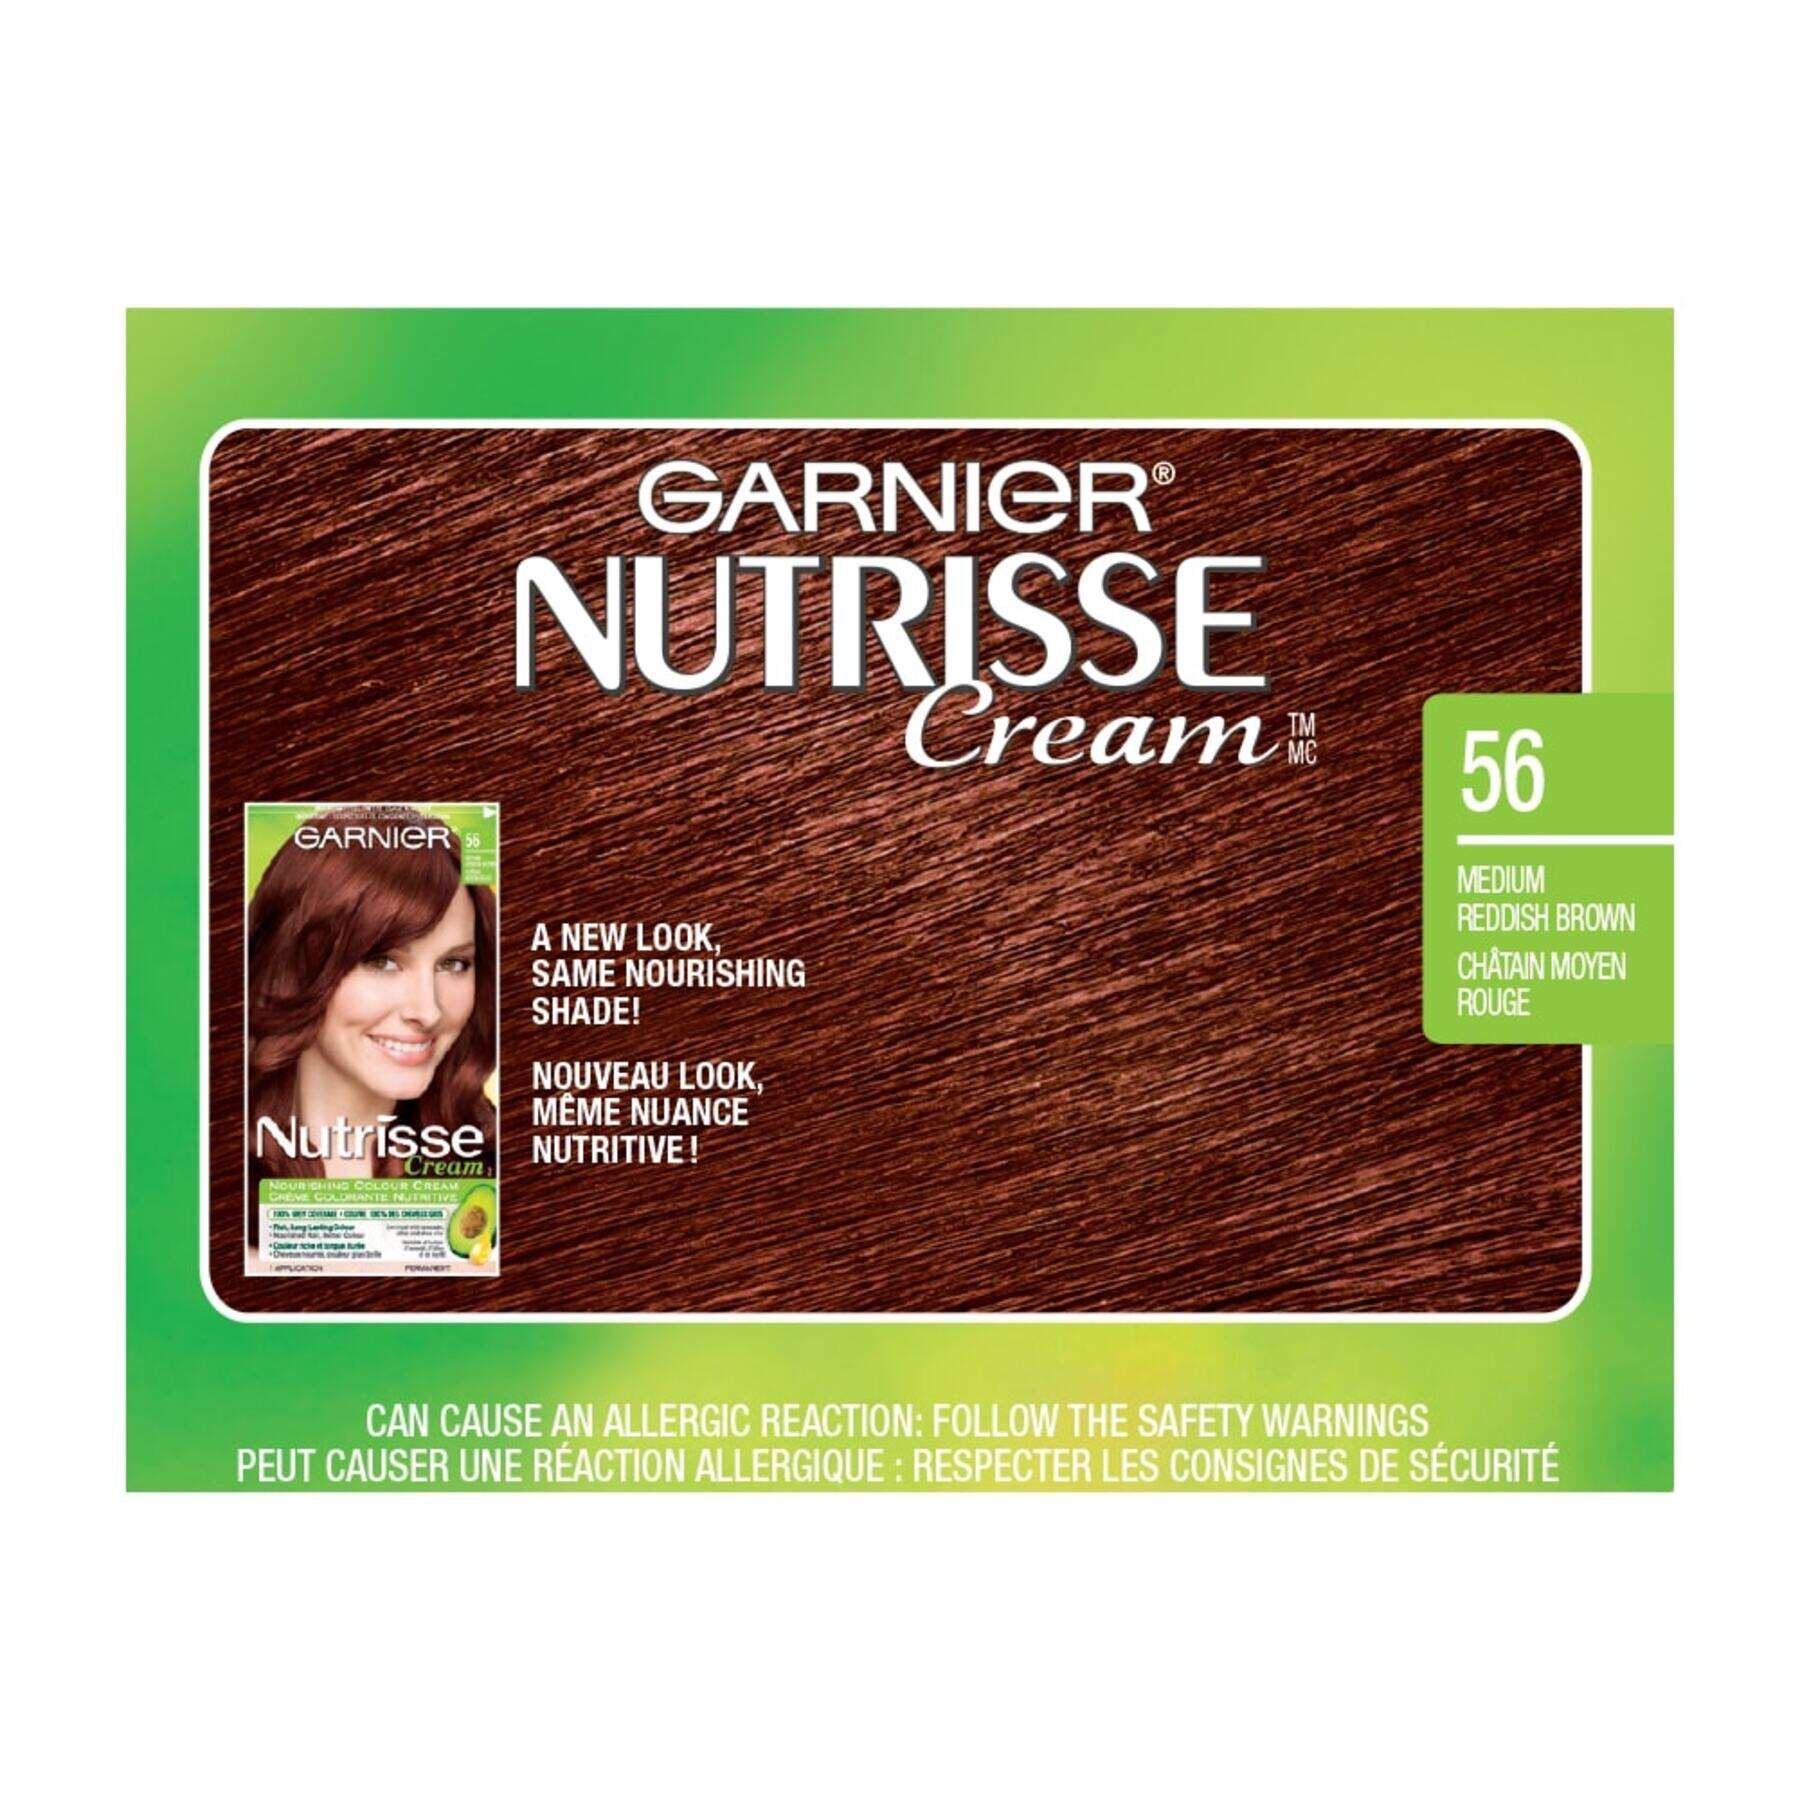 garnier hair dye nutrisse cream 56 medium reddish brown 0770103447131 swatch